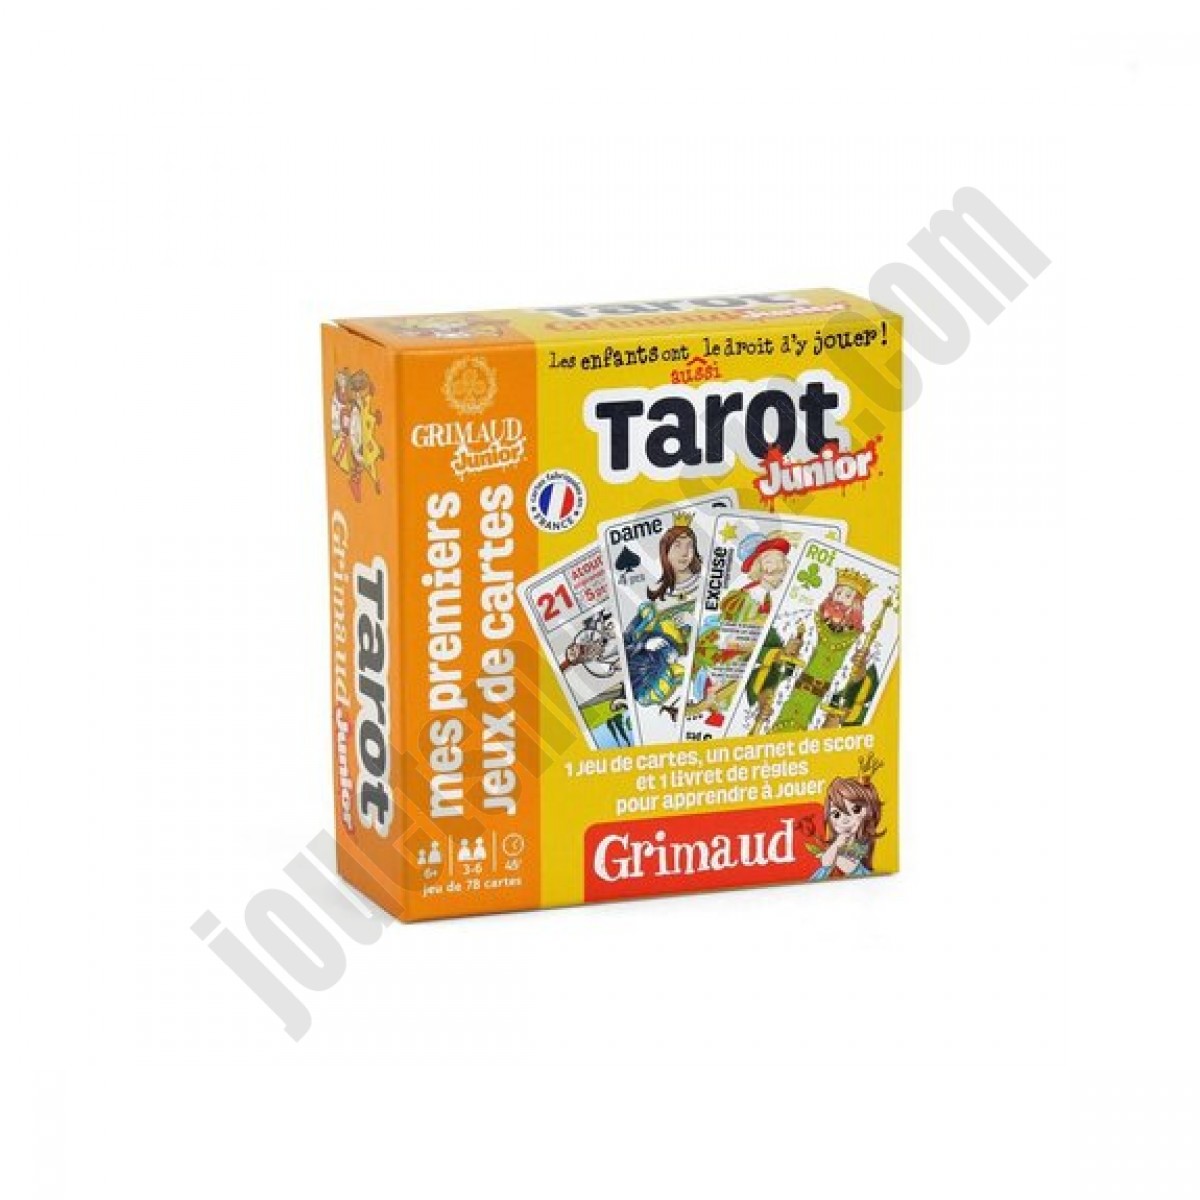 Tarot Juniorjeu 78 carte ◆◆◆ Nouveau - Tarot Juniorjeu 78 carte ◆◆◆ Nouveau